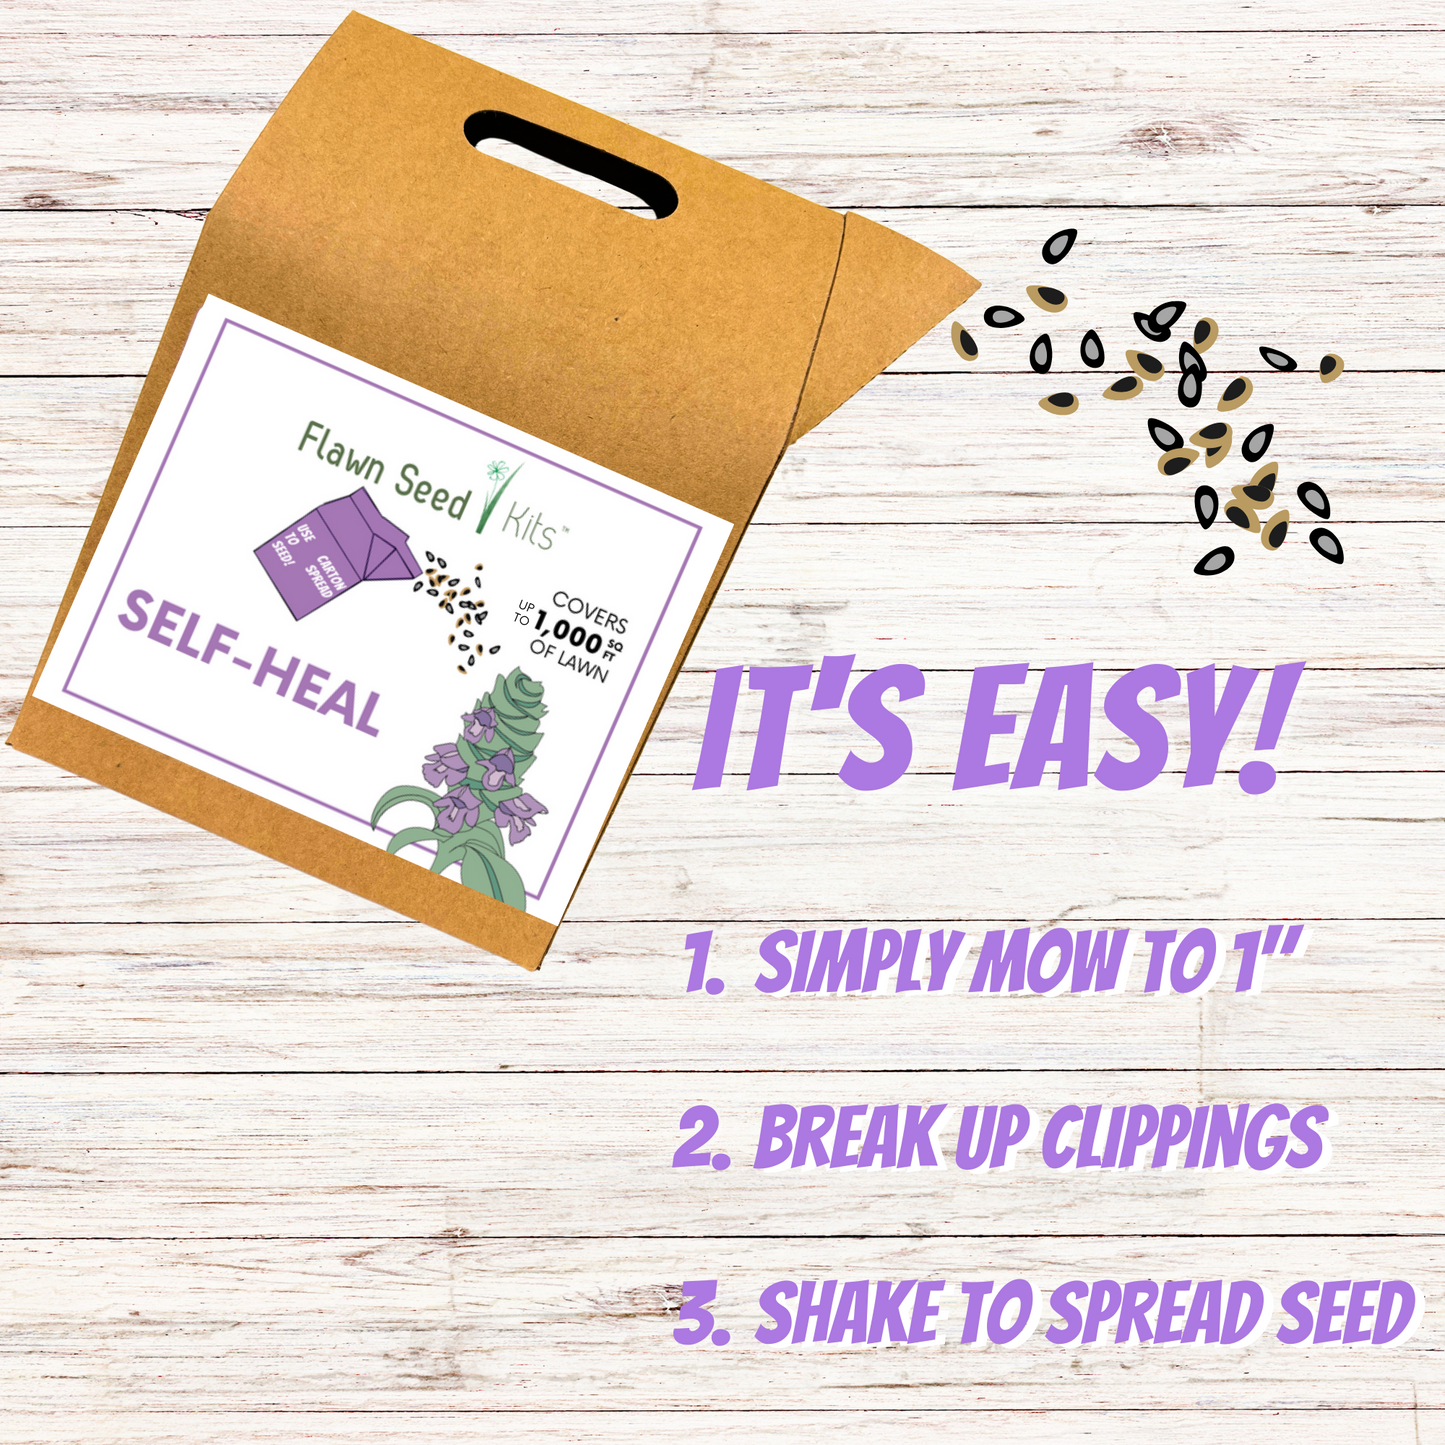 Self-Heal "Heal-All" Eco-Friendly Seeding Kit